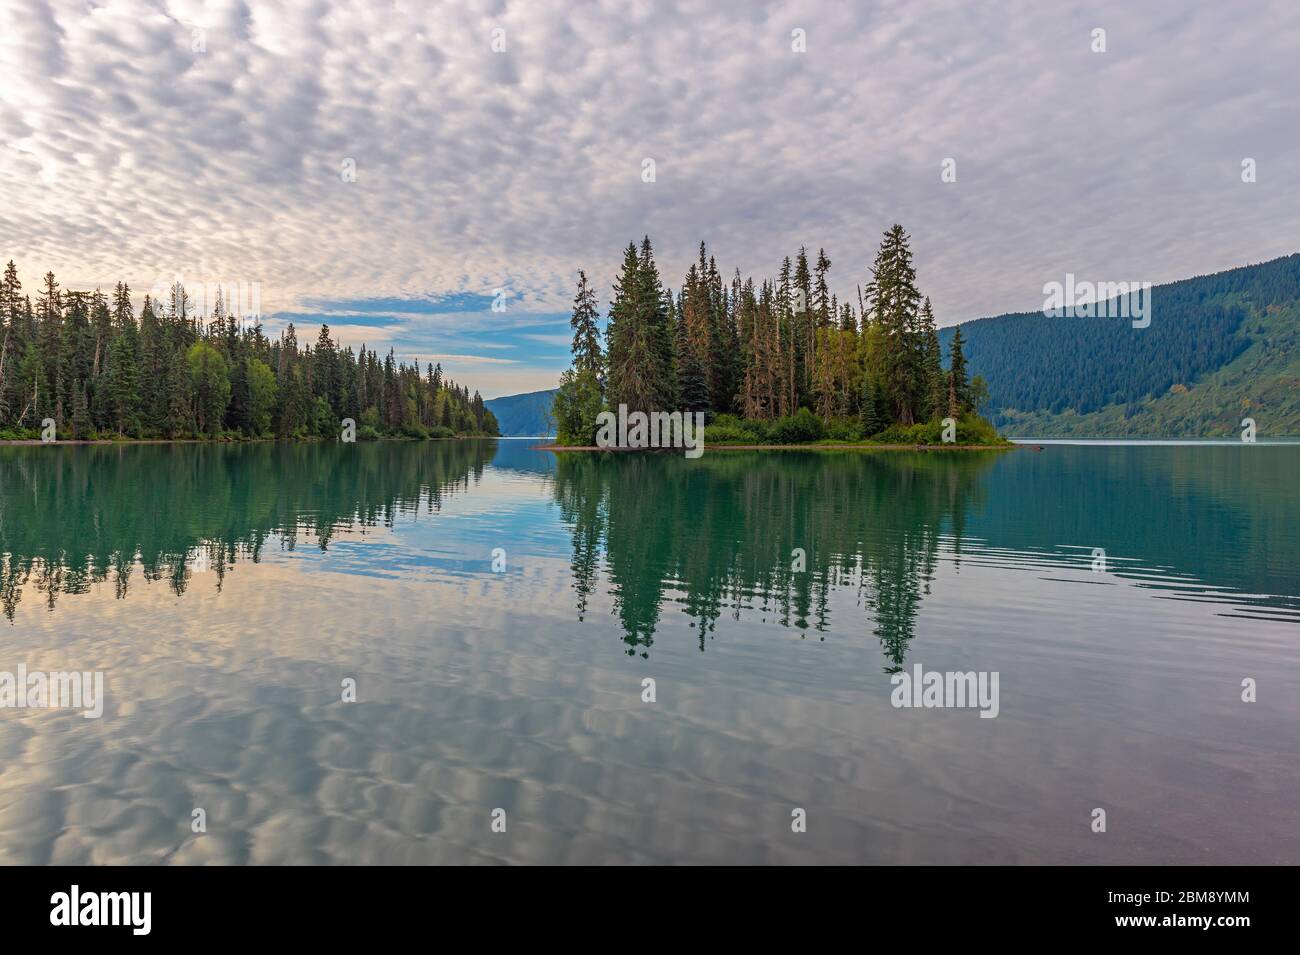 Lever du soleil et reflet des pins dans le lac Mirror, parc national Banff, Alberta, Canada. Banque D'Images